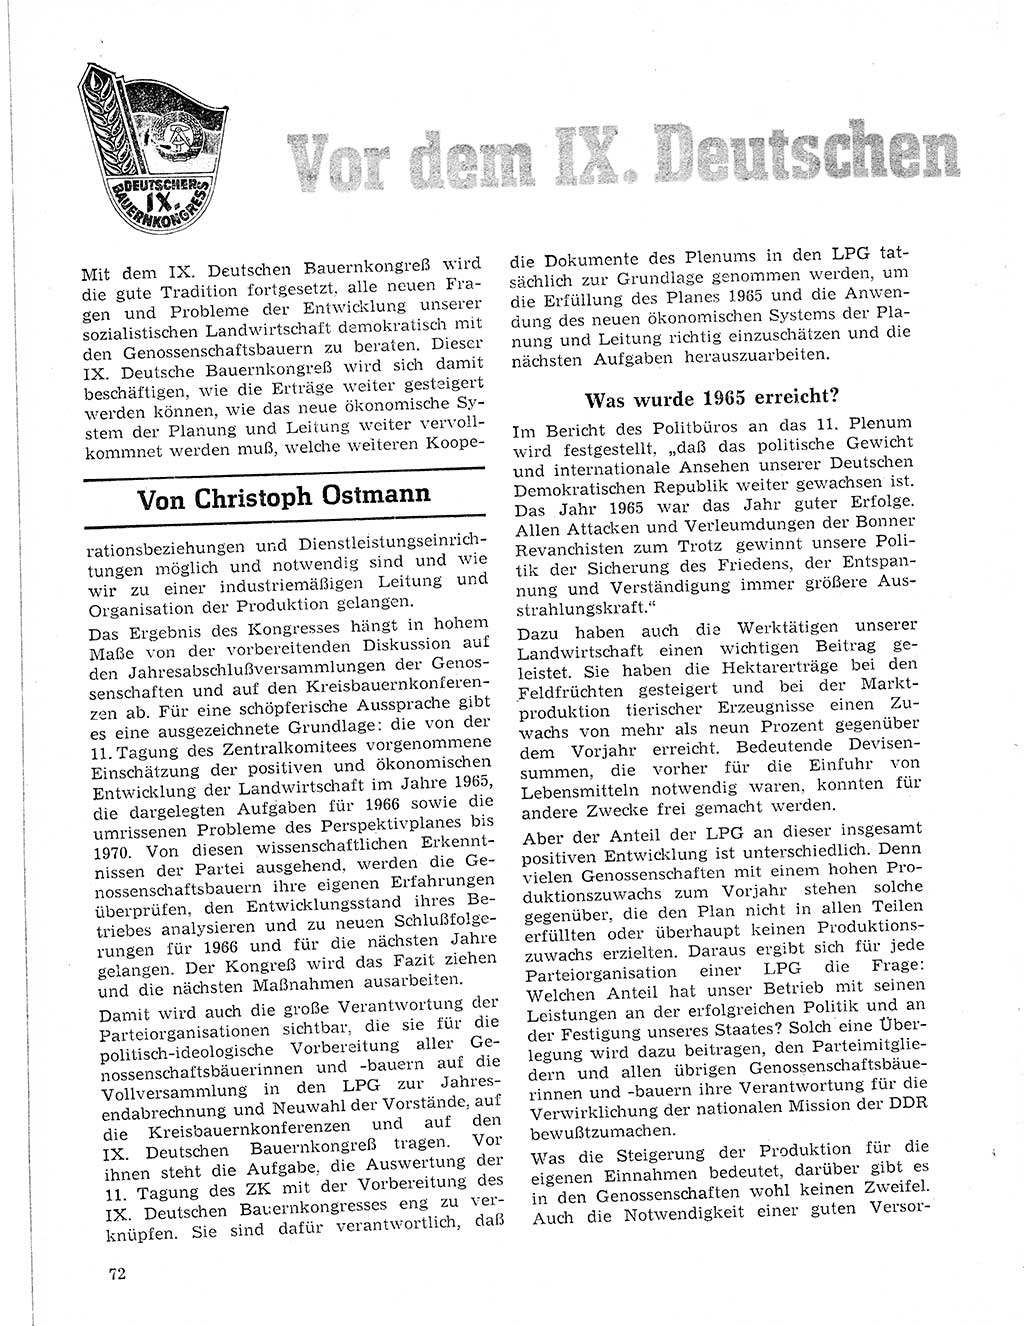 Neuer Weg (NW), Organ des Zentralkomitees (ZK) der SED (Sozialistische Einheitspartei Deutschlands) fÃ¼r Fragen des Parteilebens, 21. Jahrgang [Deutsche Demokratische Republik (DDR)] 1966, Seite 72 (NW ZK SED DDR 1966, S. 72)